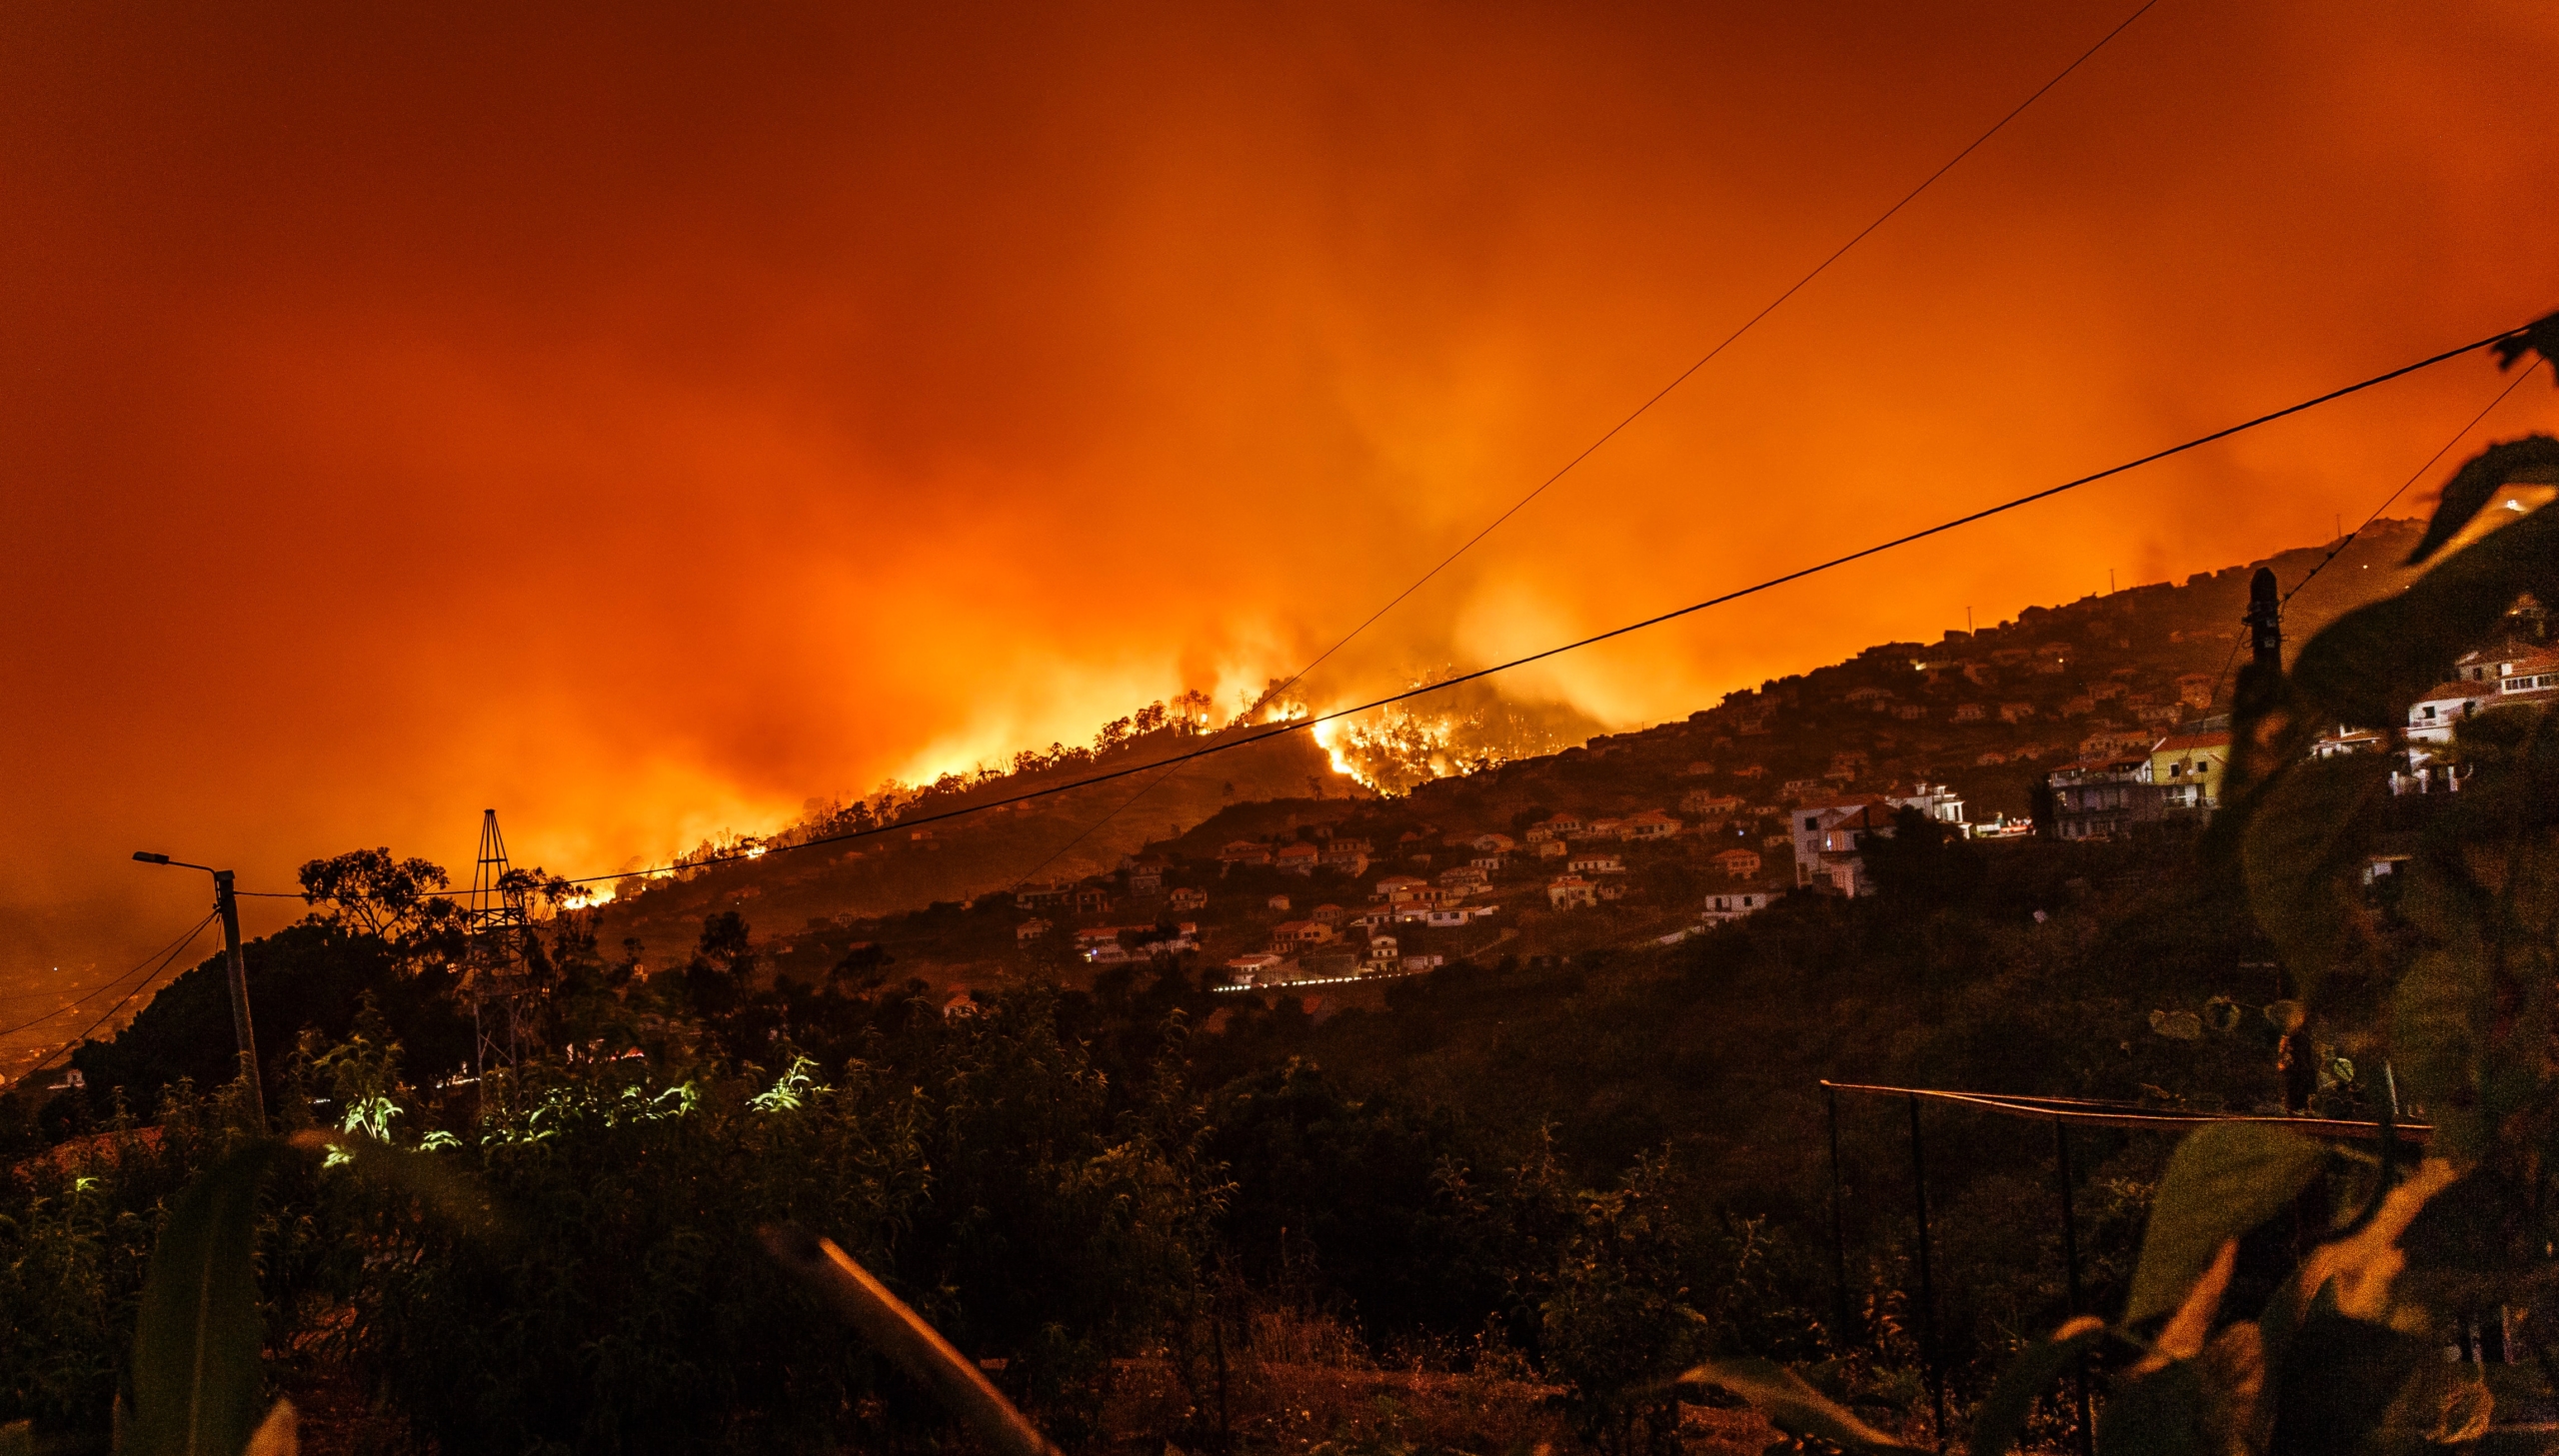 El 50% de la superficie quemada en la última ola de incendios en Europa está protegida